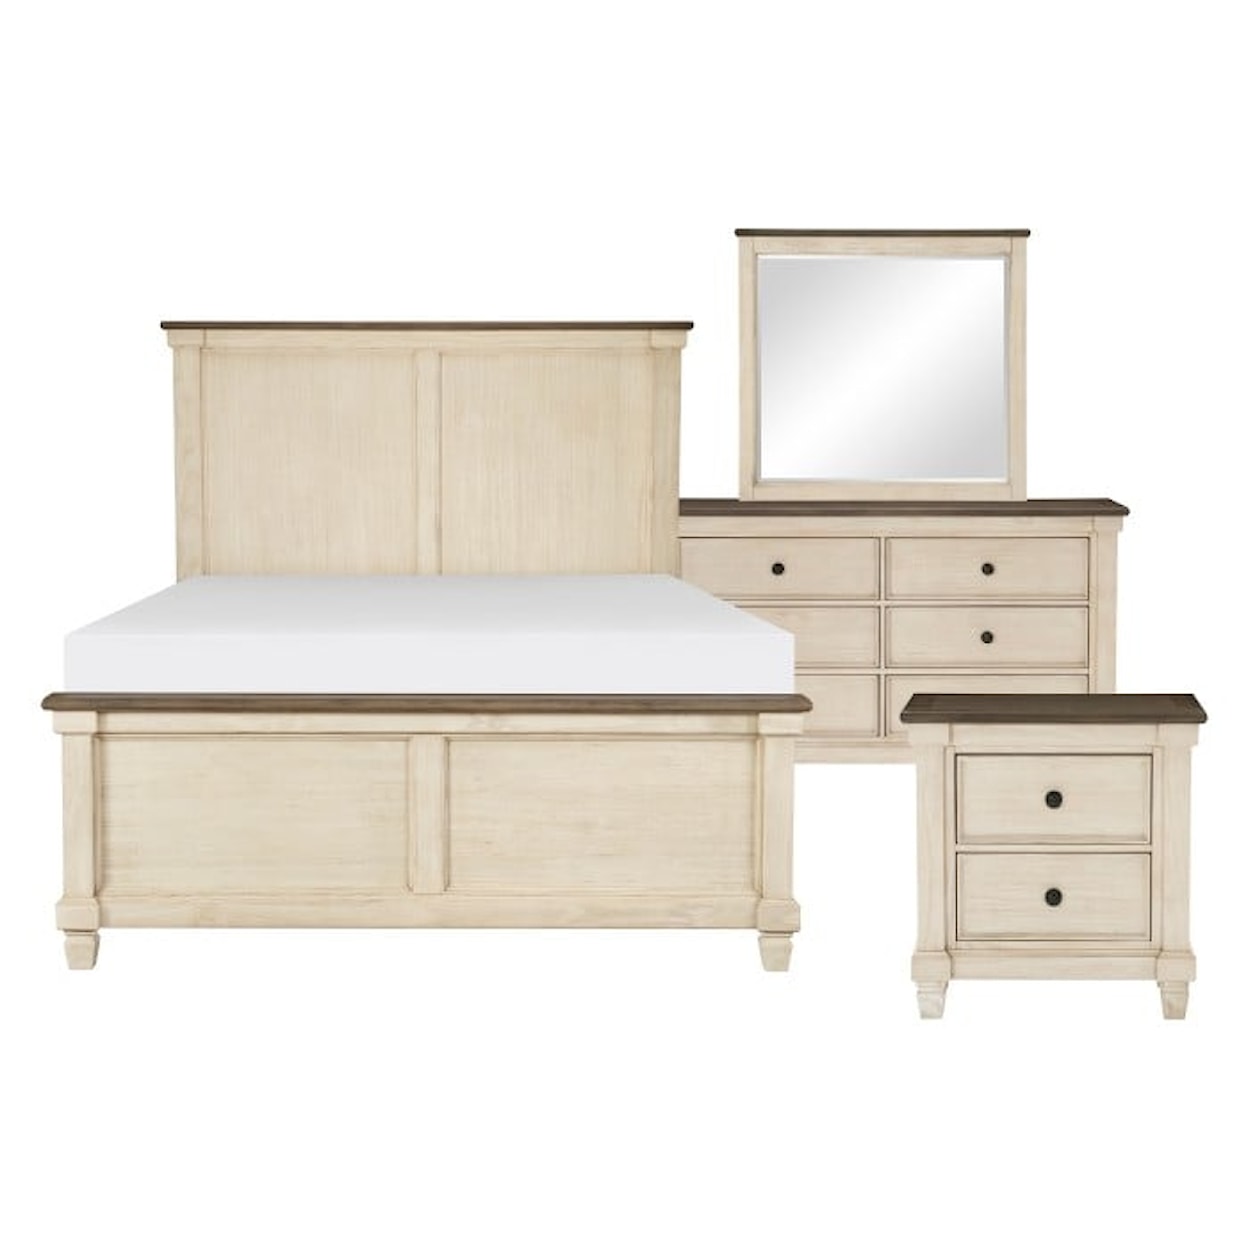 Homelegance Furniture Weaver Queen Bedroom Set